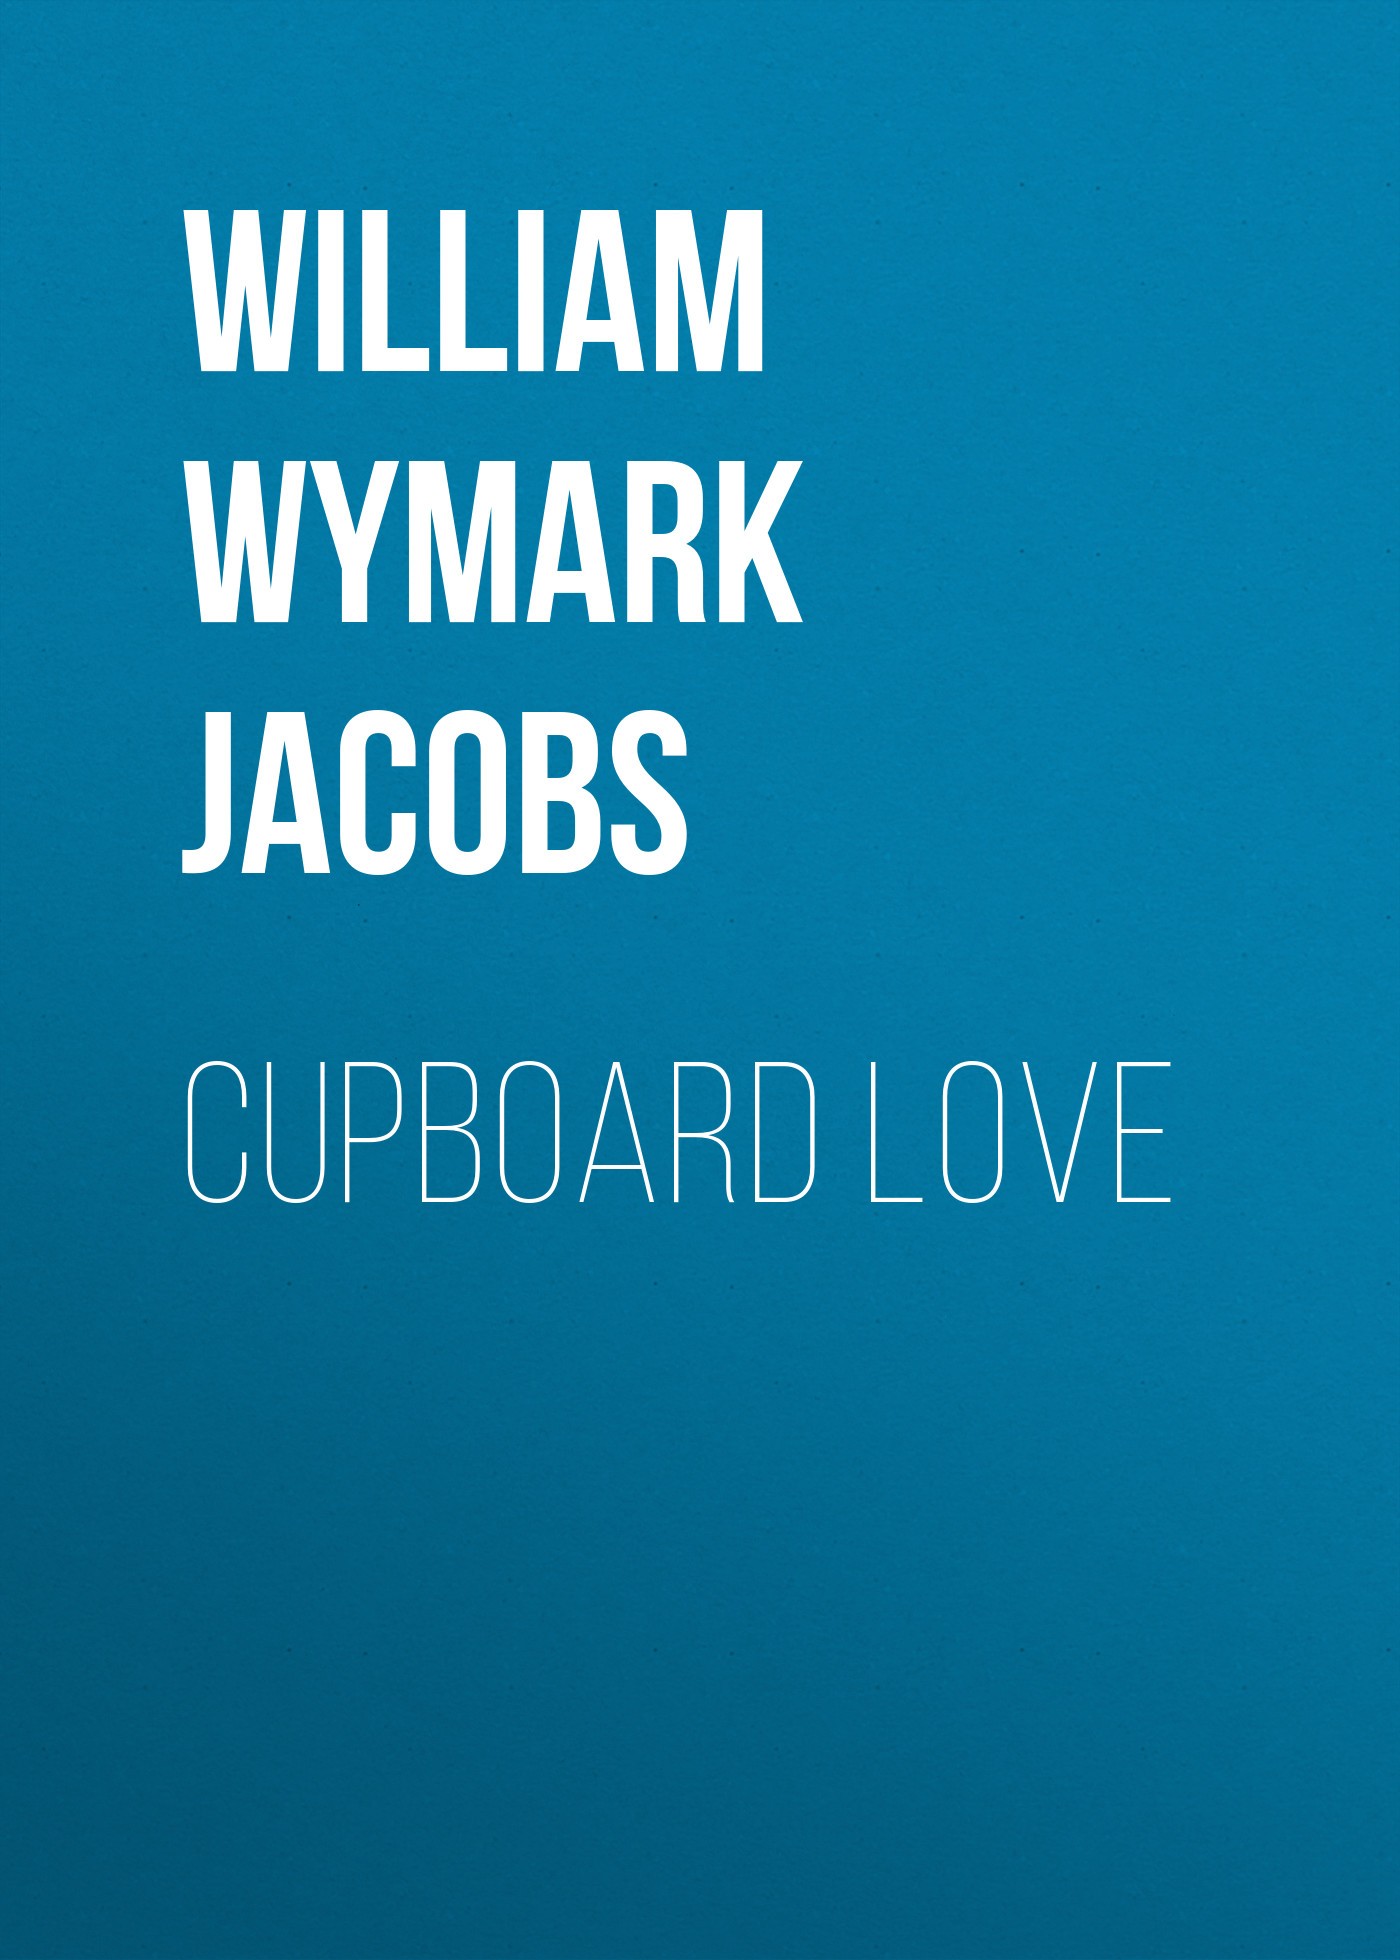 Книга Cupboard Love из серии , созданная William Wymark Jacobs, может относится к жанру Зарубежный юмор, Зарубежная старинная литература, Зарубежная классика. Стоимость электронной книги Cupboard Love с идентификатором 34843902 составляет 0 руб.